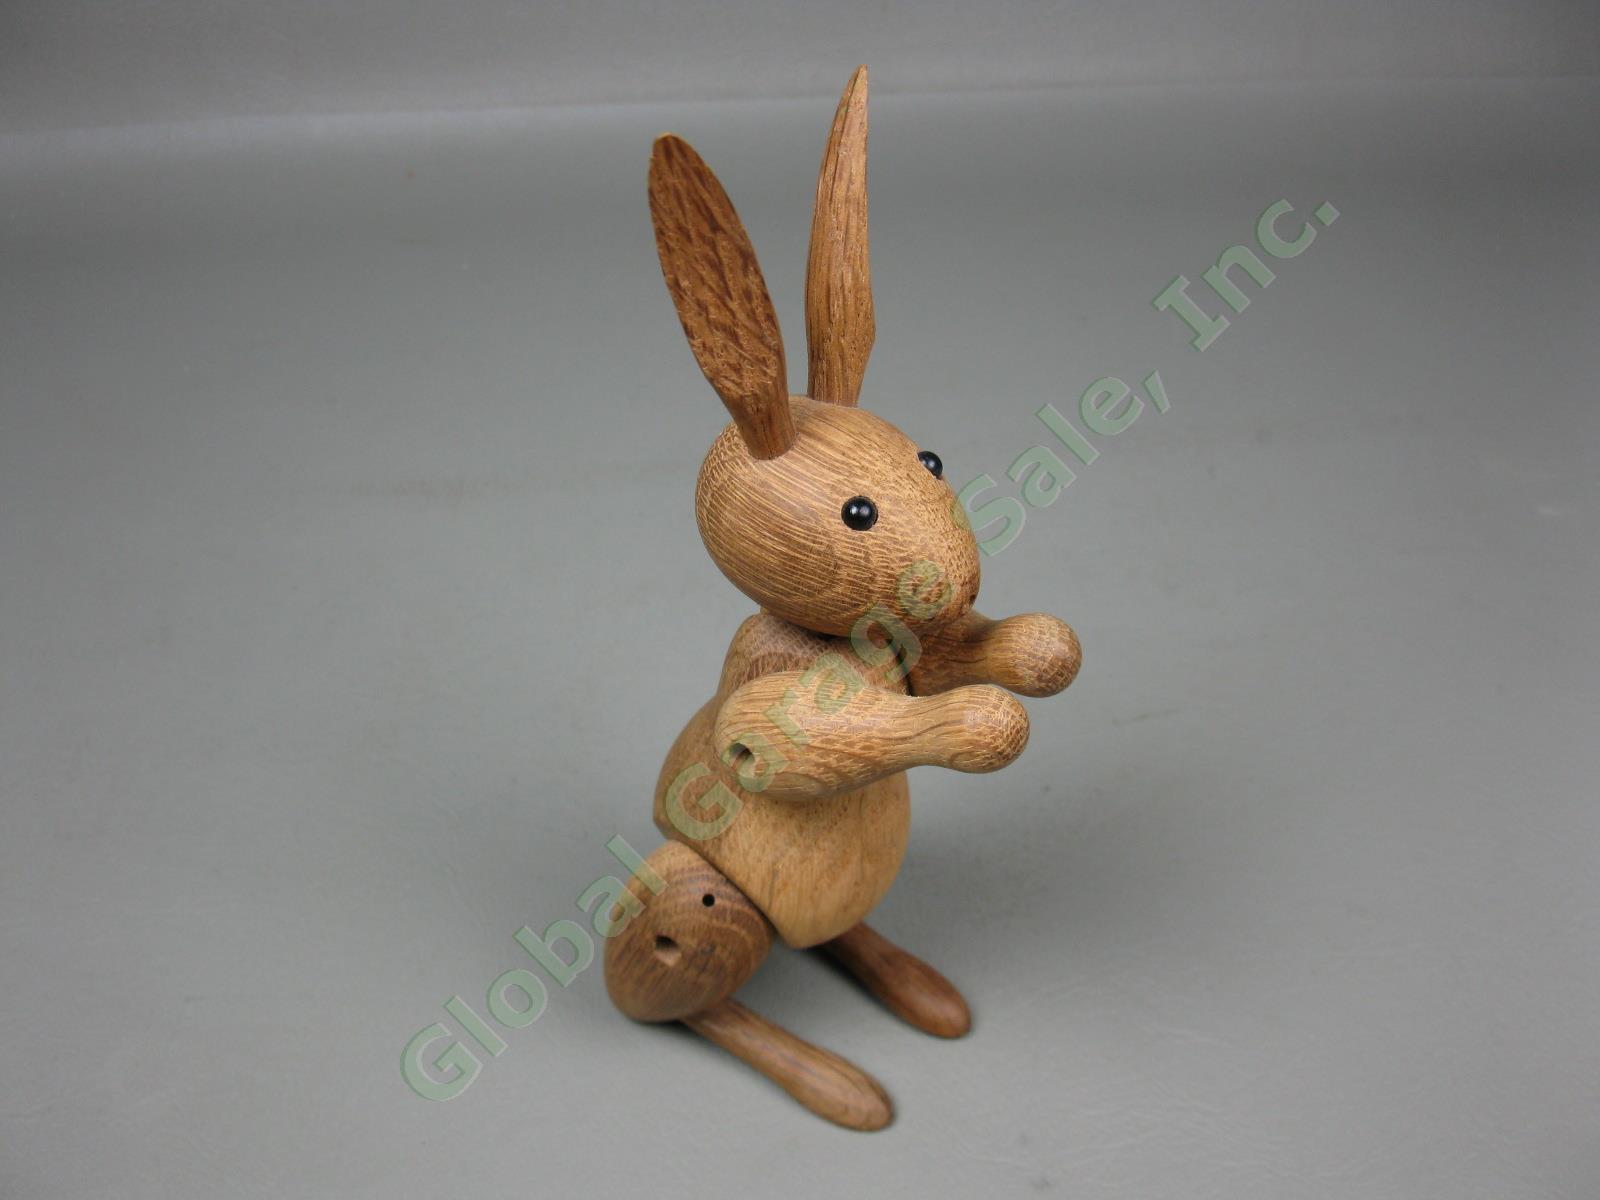 Vtg Mid-Century Modern Kay Bojesen Danish Teak Wood Wooden Rabbit Toy Denmark NR 1